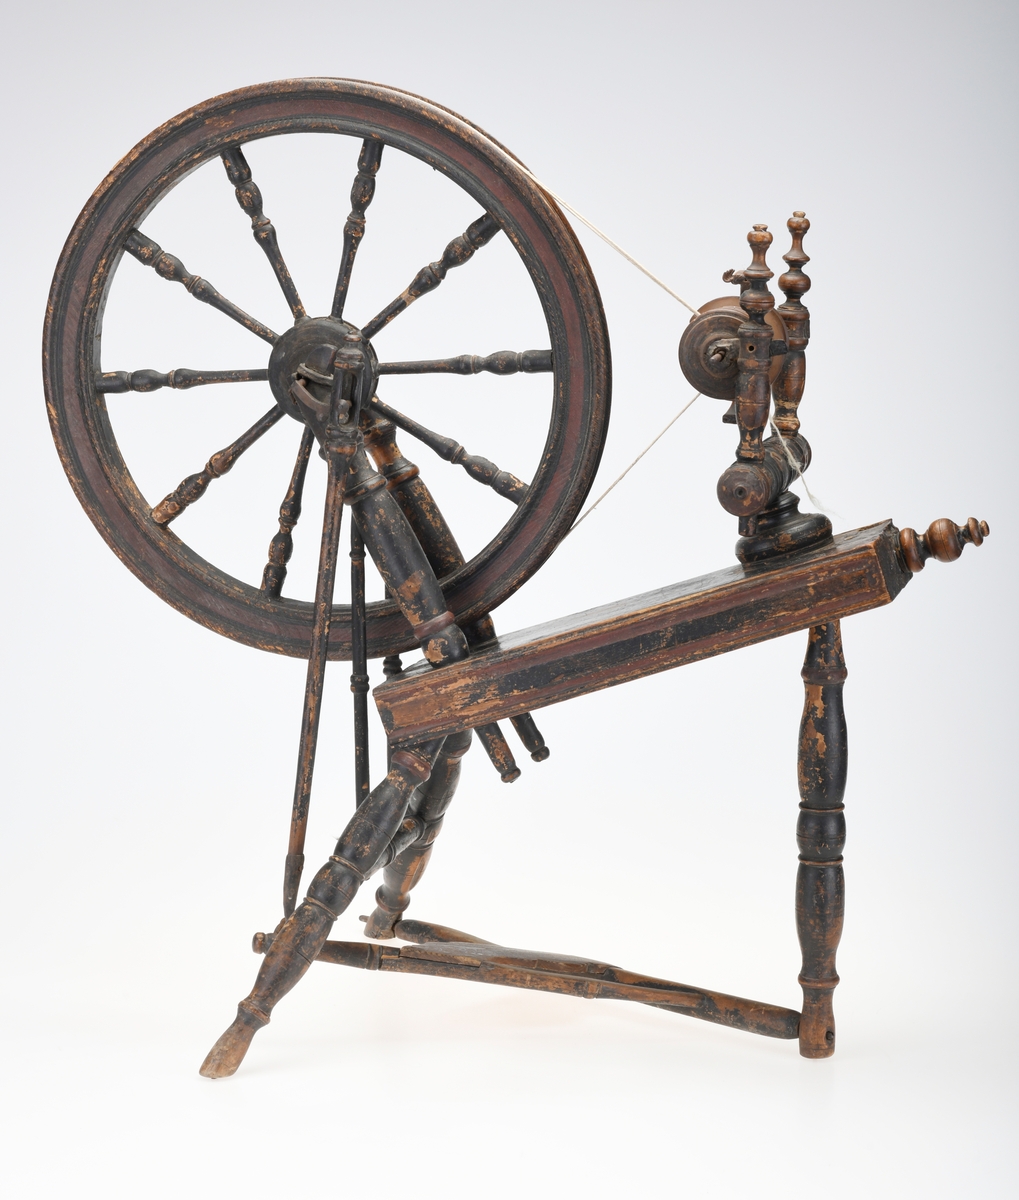 En barnerokk med et pedaldrevet svinghjul med et skråstilt brett (rokkebryst). Det er montert på en vinge/spindel som spinner tråden og en snelle som spoler opp garnet. Rokken drives av en fotpedal.